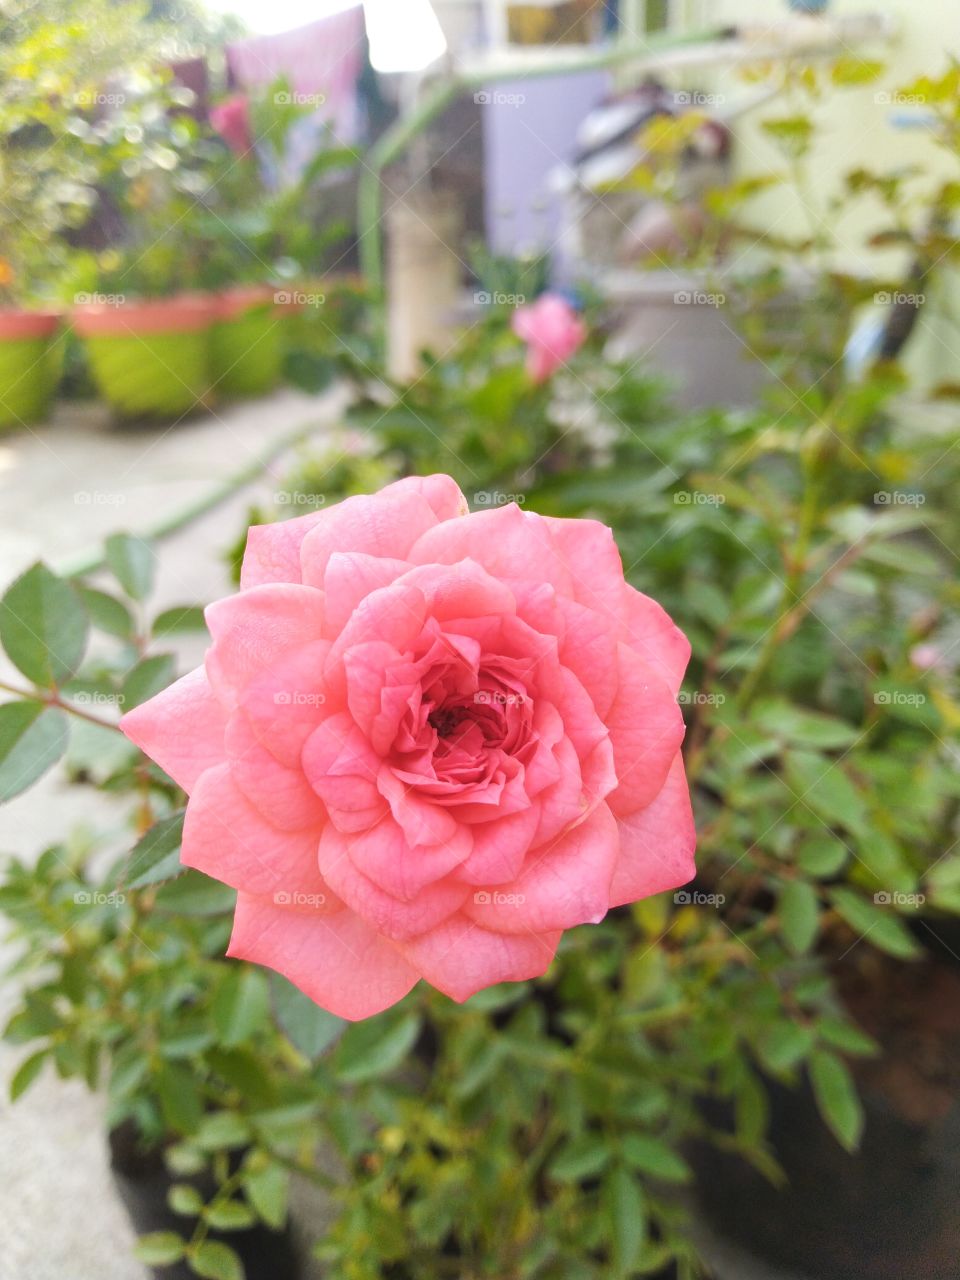 pinkish rose